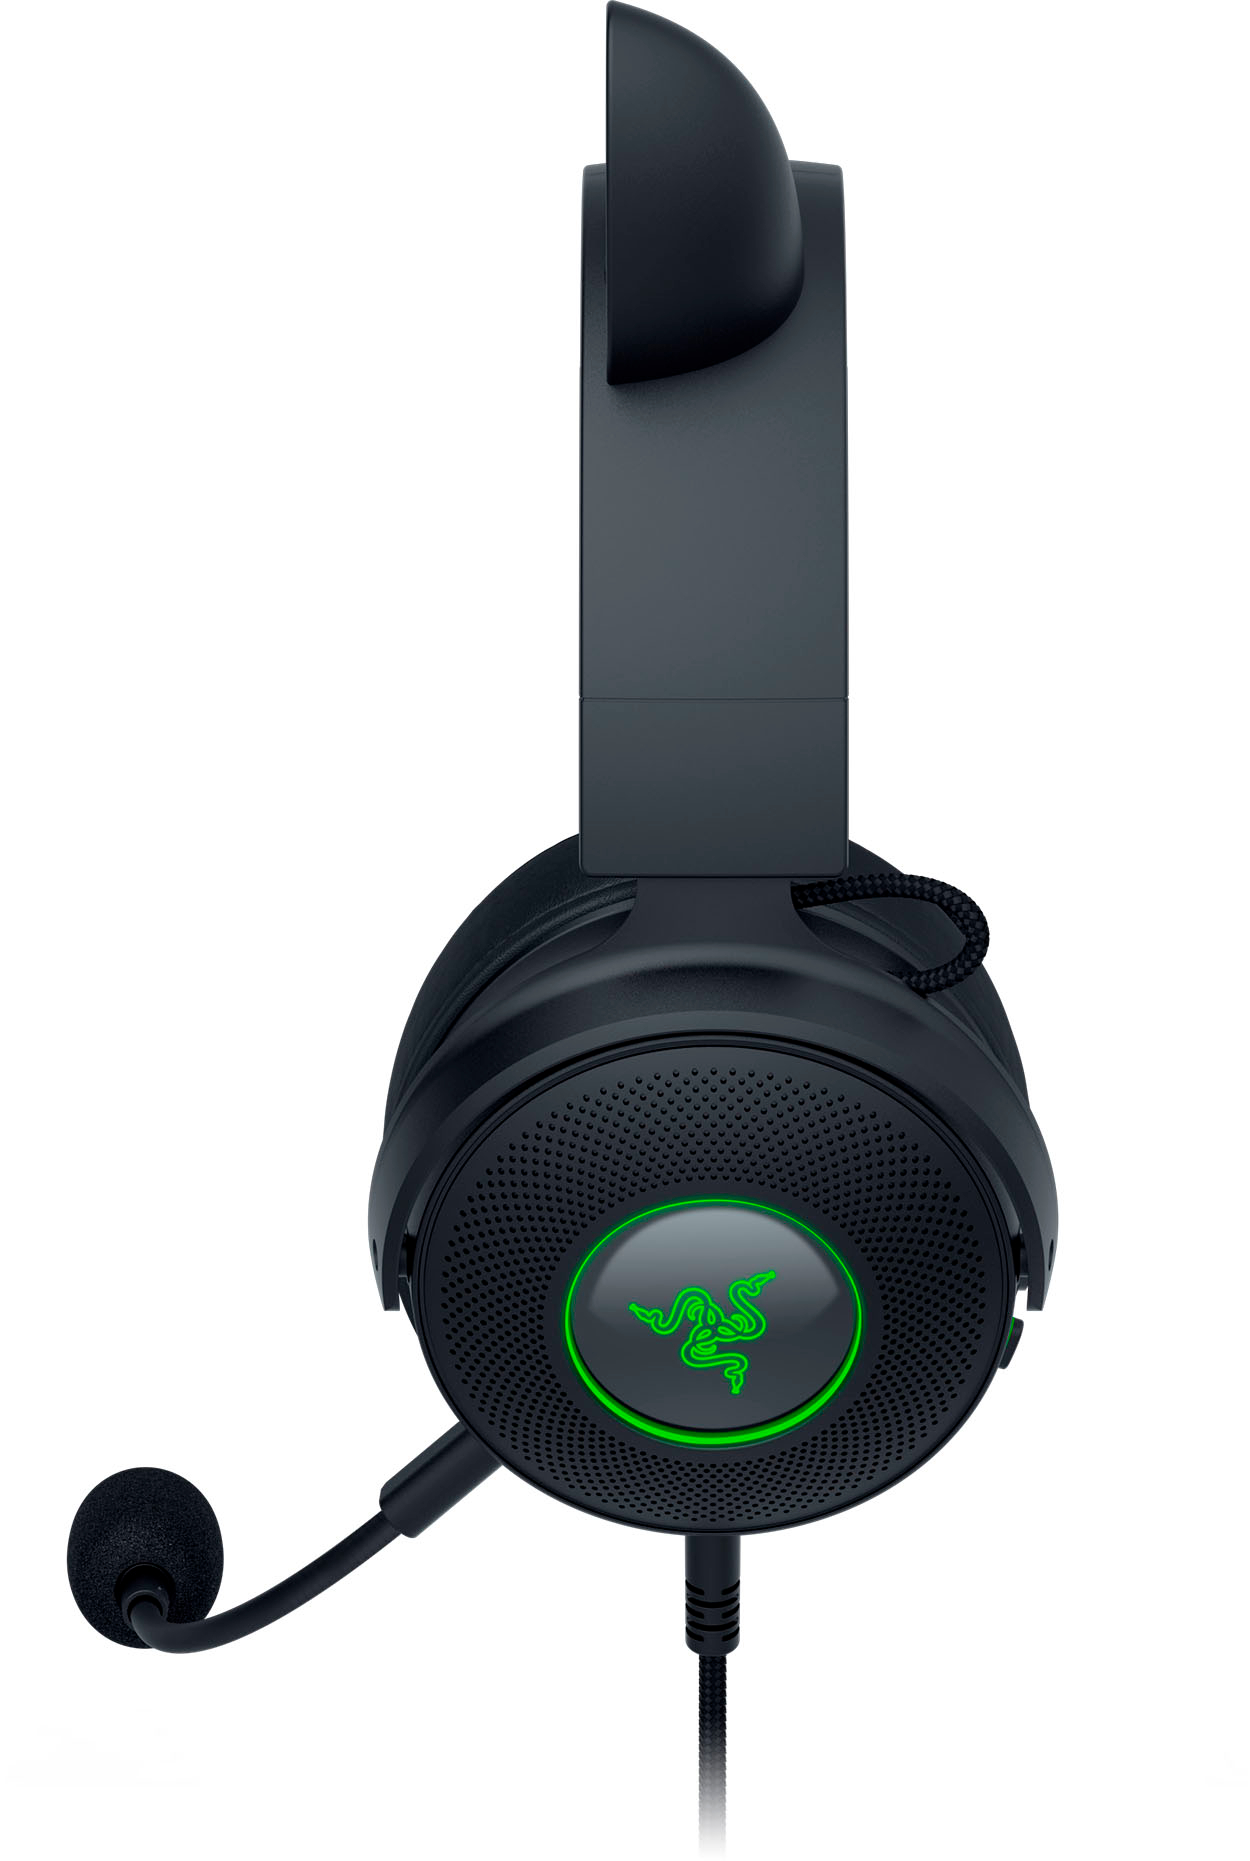 Razer Kraken Kitty Edition V2 Pro Wired Gaming Headset Black RZ04